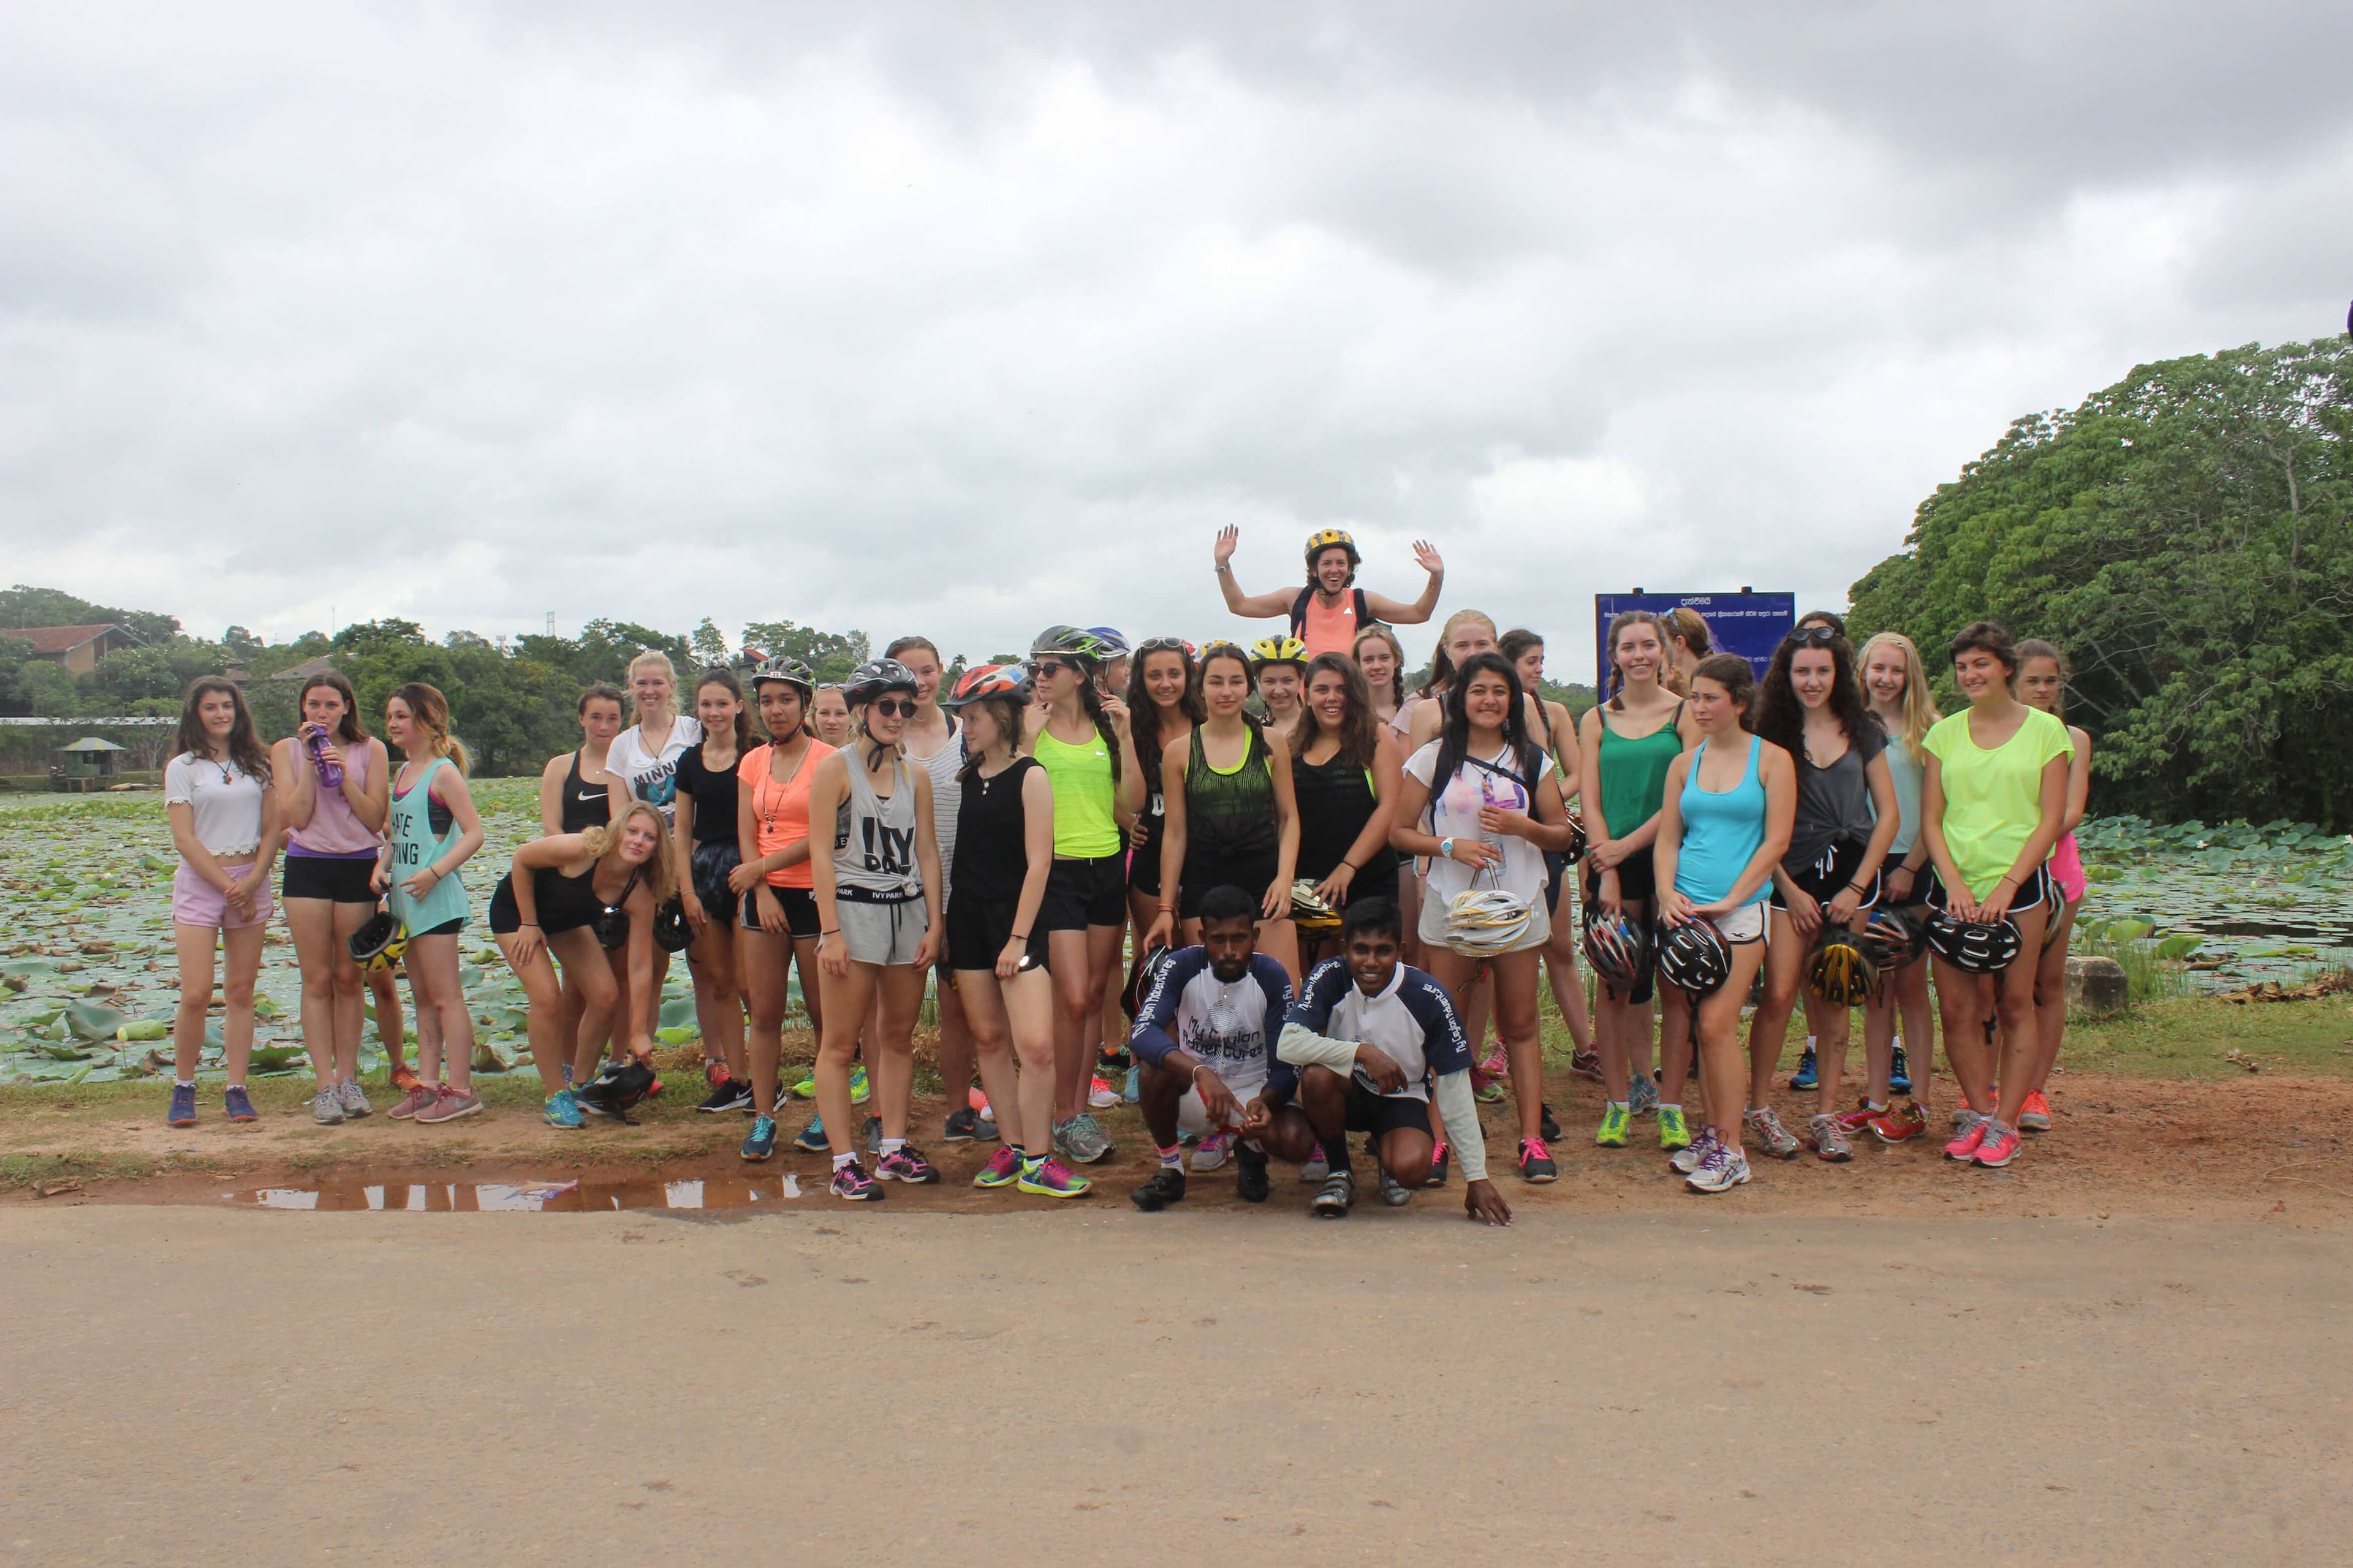 Un grupo de mujeres turísticas disfrutando del recorrido en bicicleta por el campo Colombo, Sri Lanka.